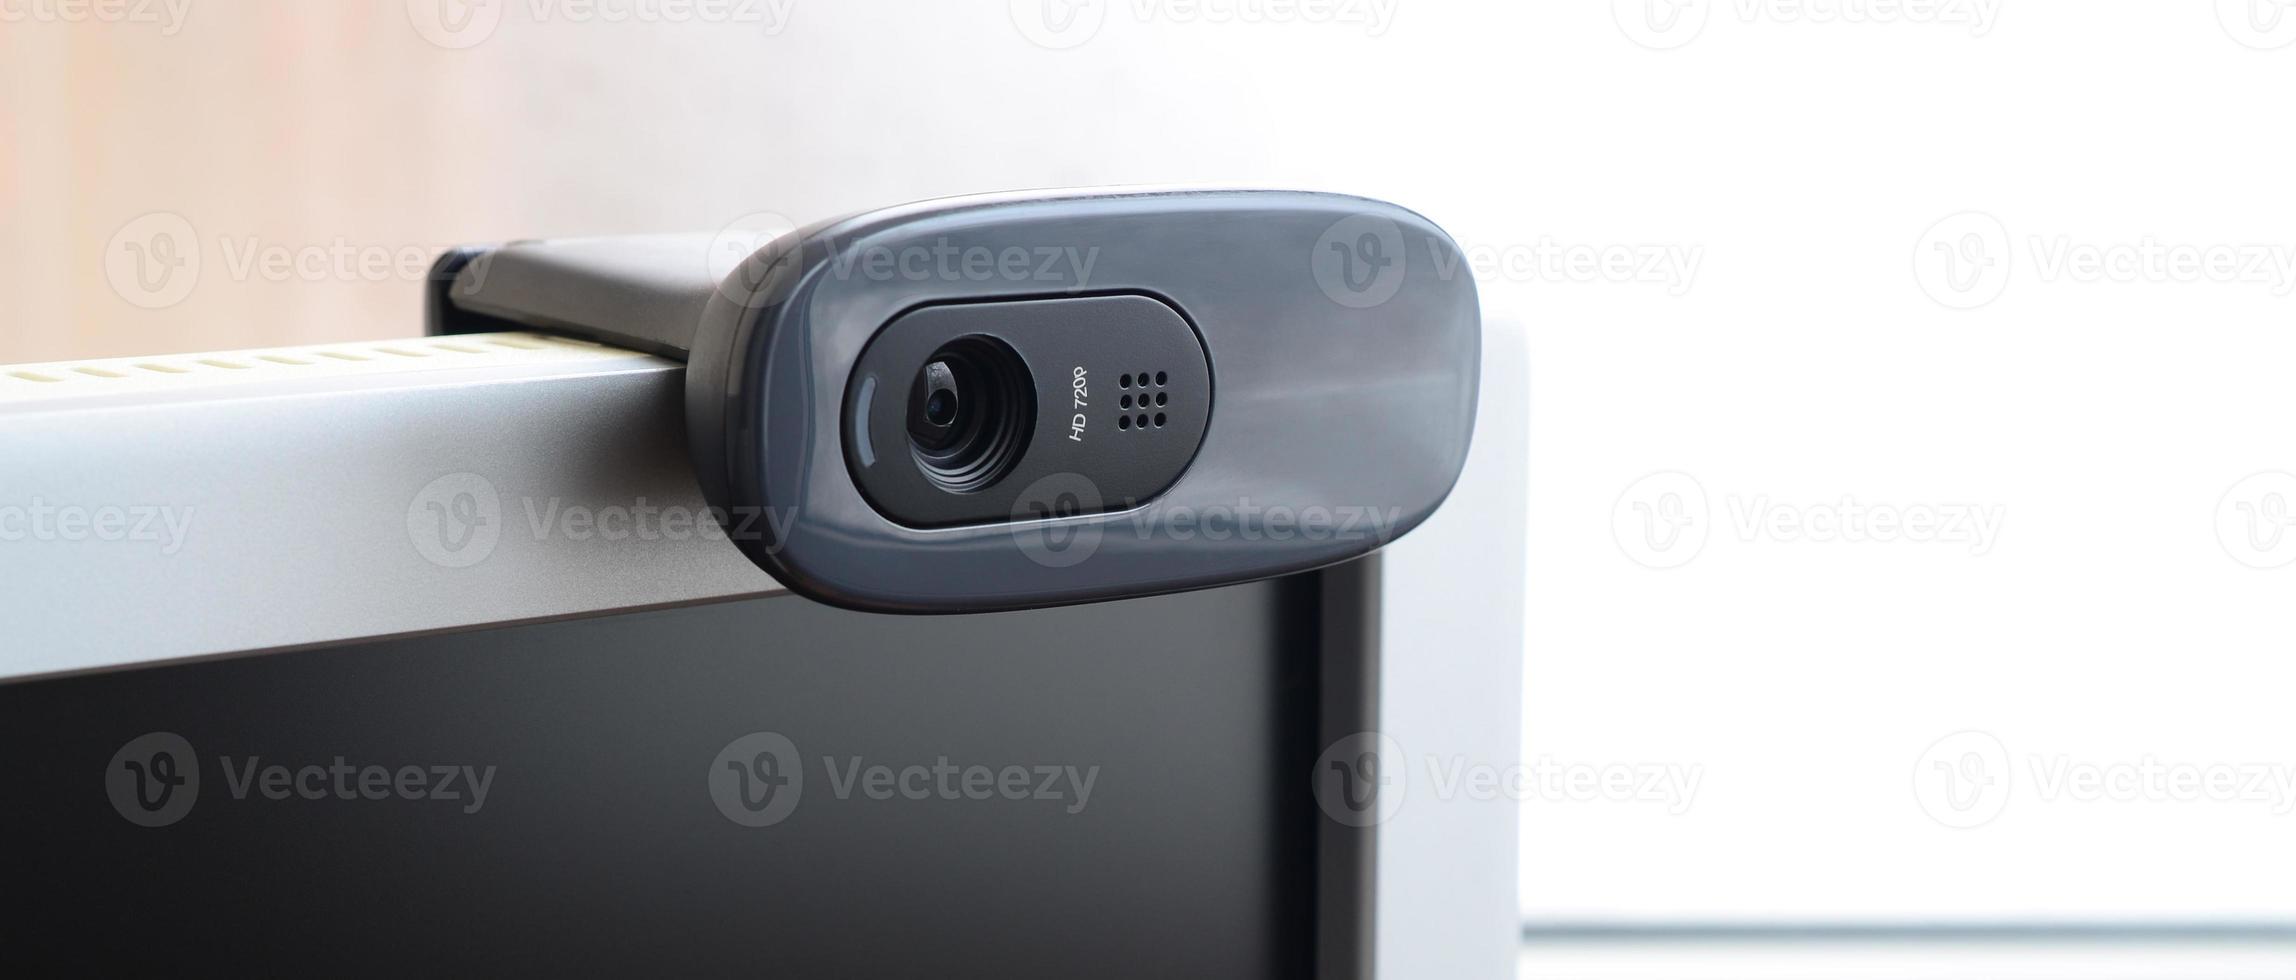 Eine moderne Webcam ist auf dem Gehäuse eines Flachbildschirms installiert. Gerät für Videokommunikation und Aufzeichnung von Videos in hoher Qualität foto